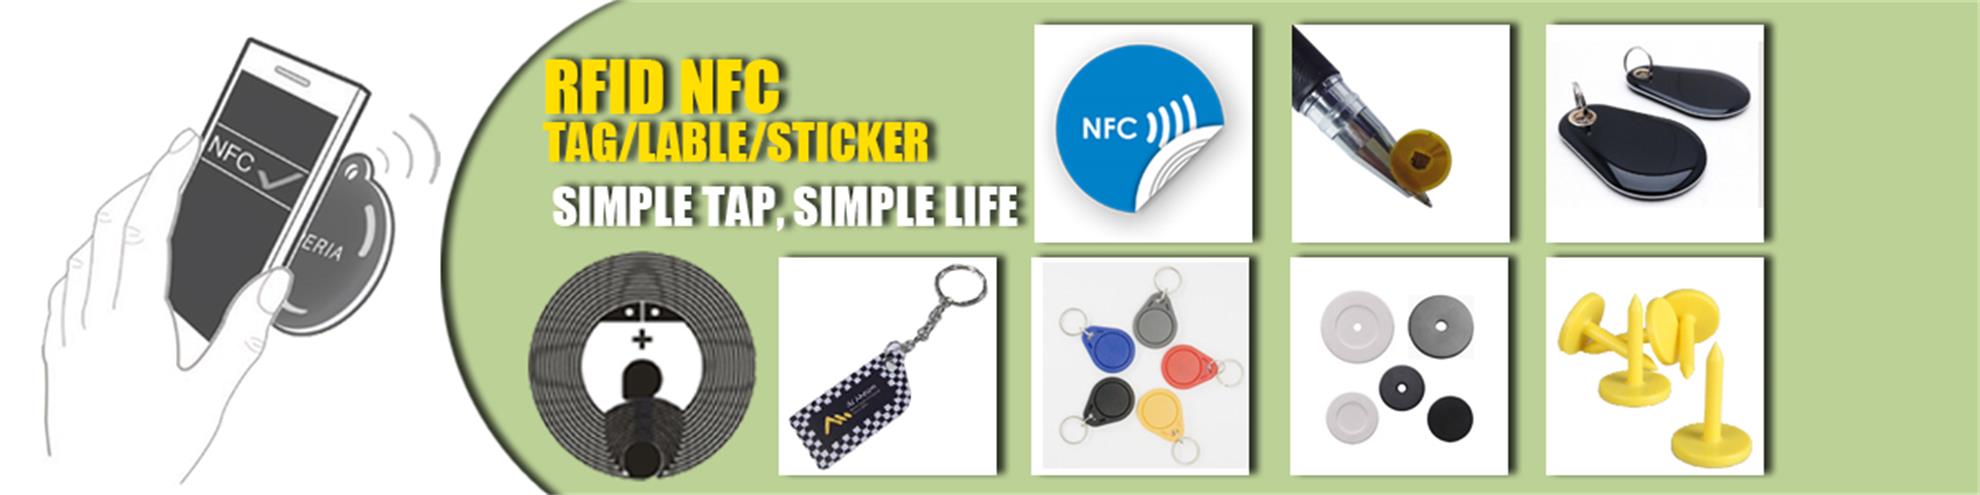 RFID NFC Tag